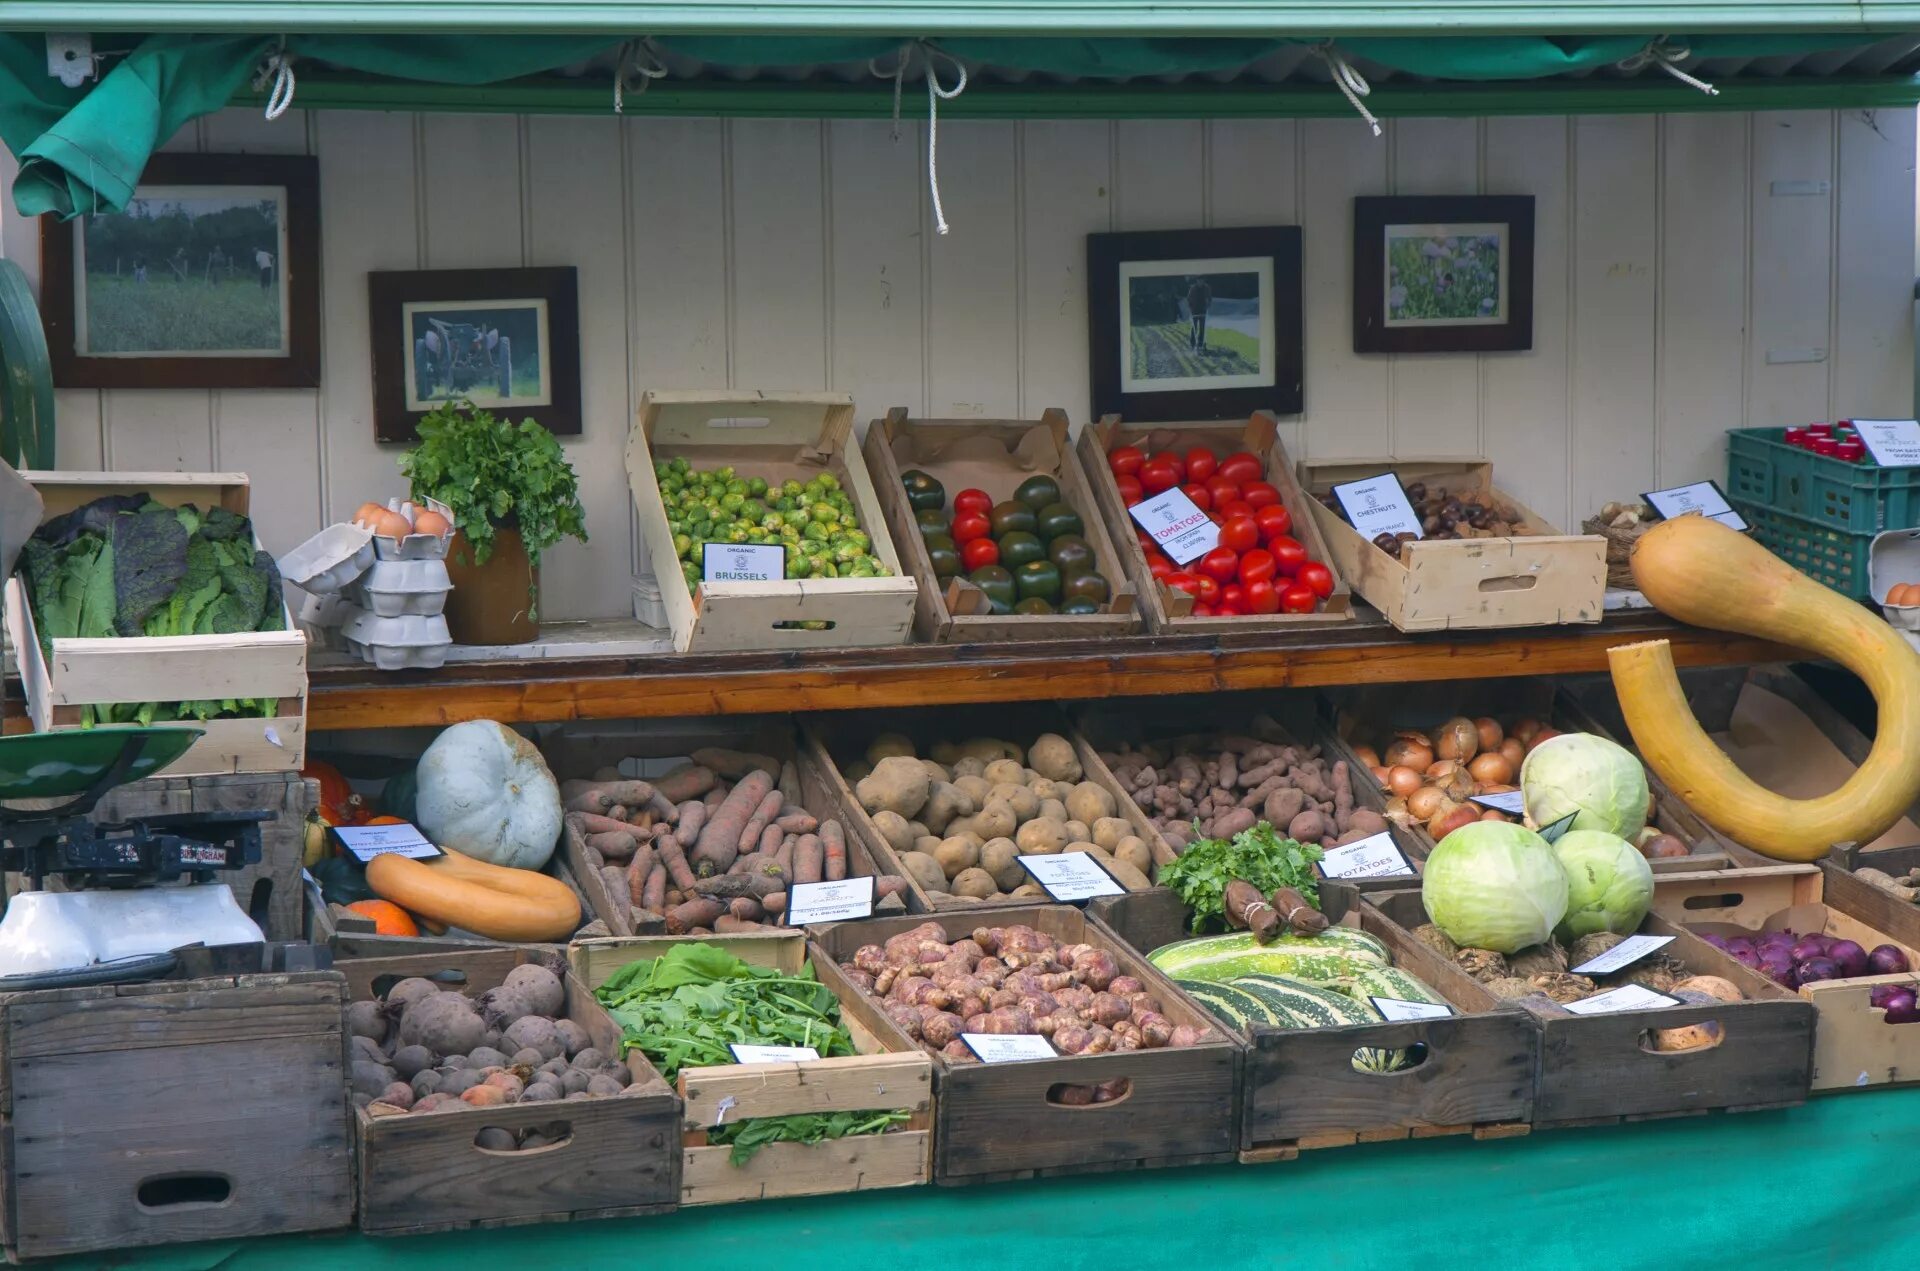 Овощи на рынке. Витрина с овощами на рынке. Прилавок с овощами и фруктами. Выкладка овощей и фруктов в ларьке. Рынок витрины